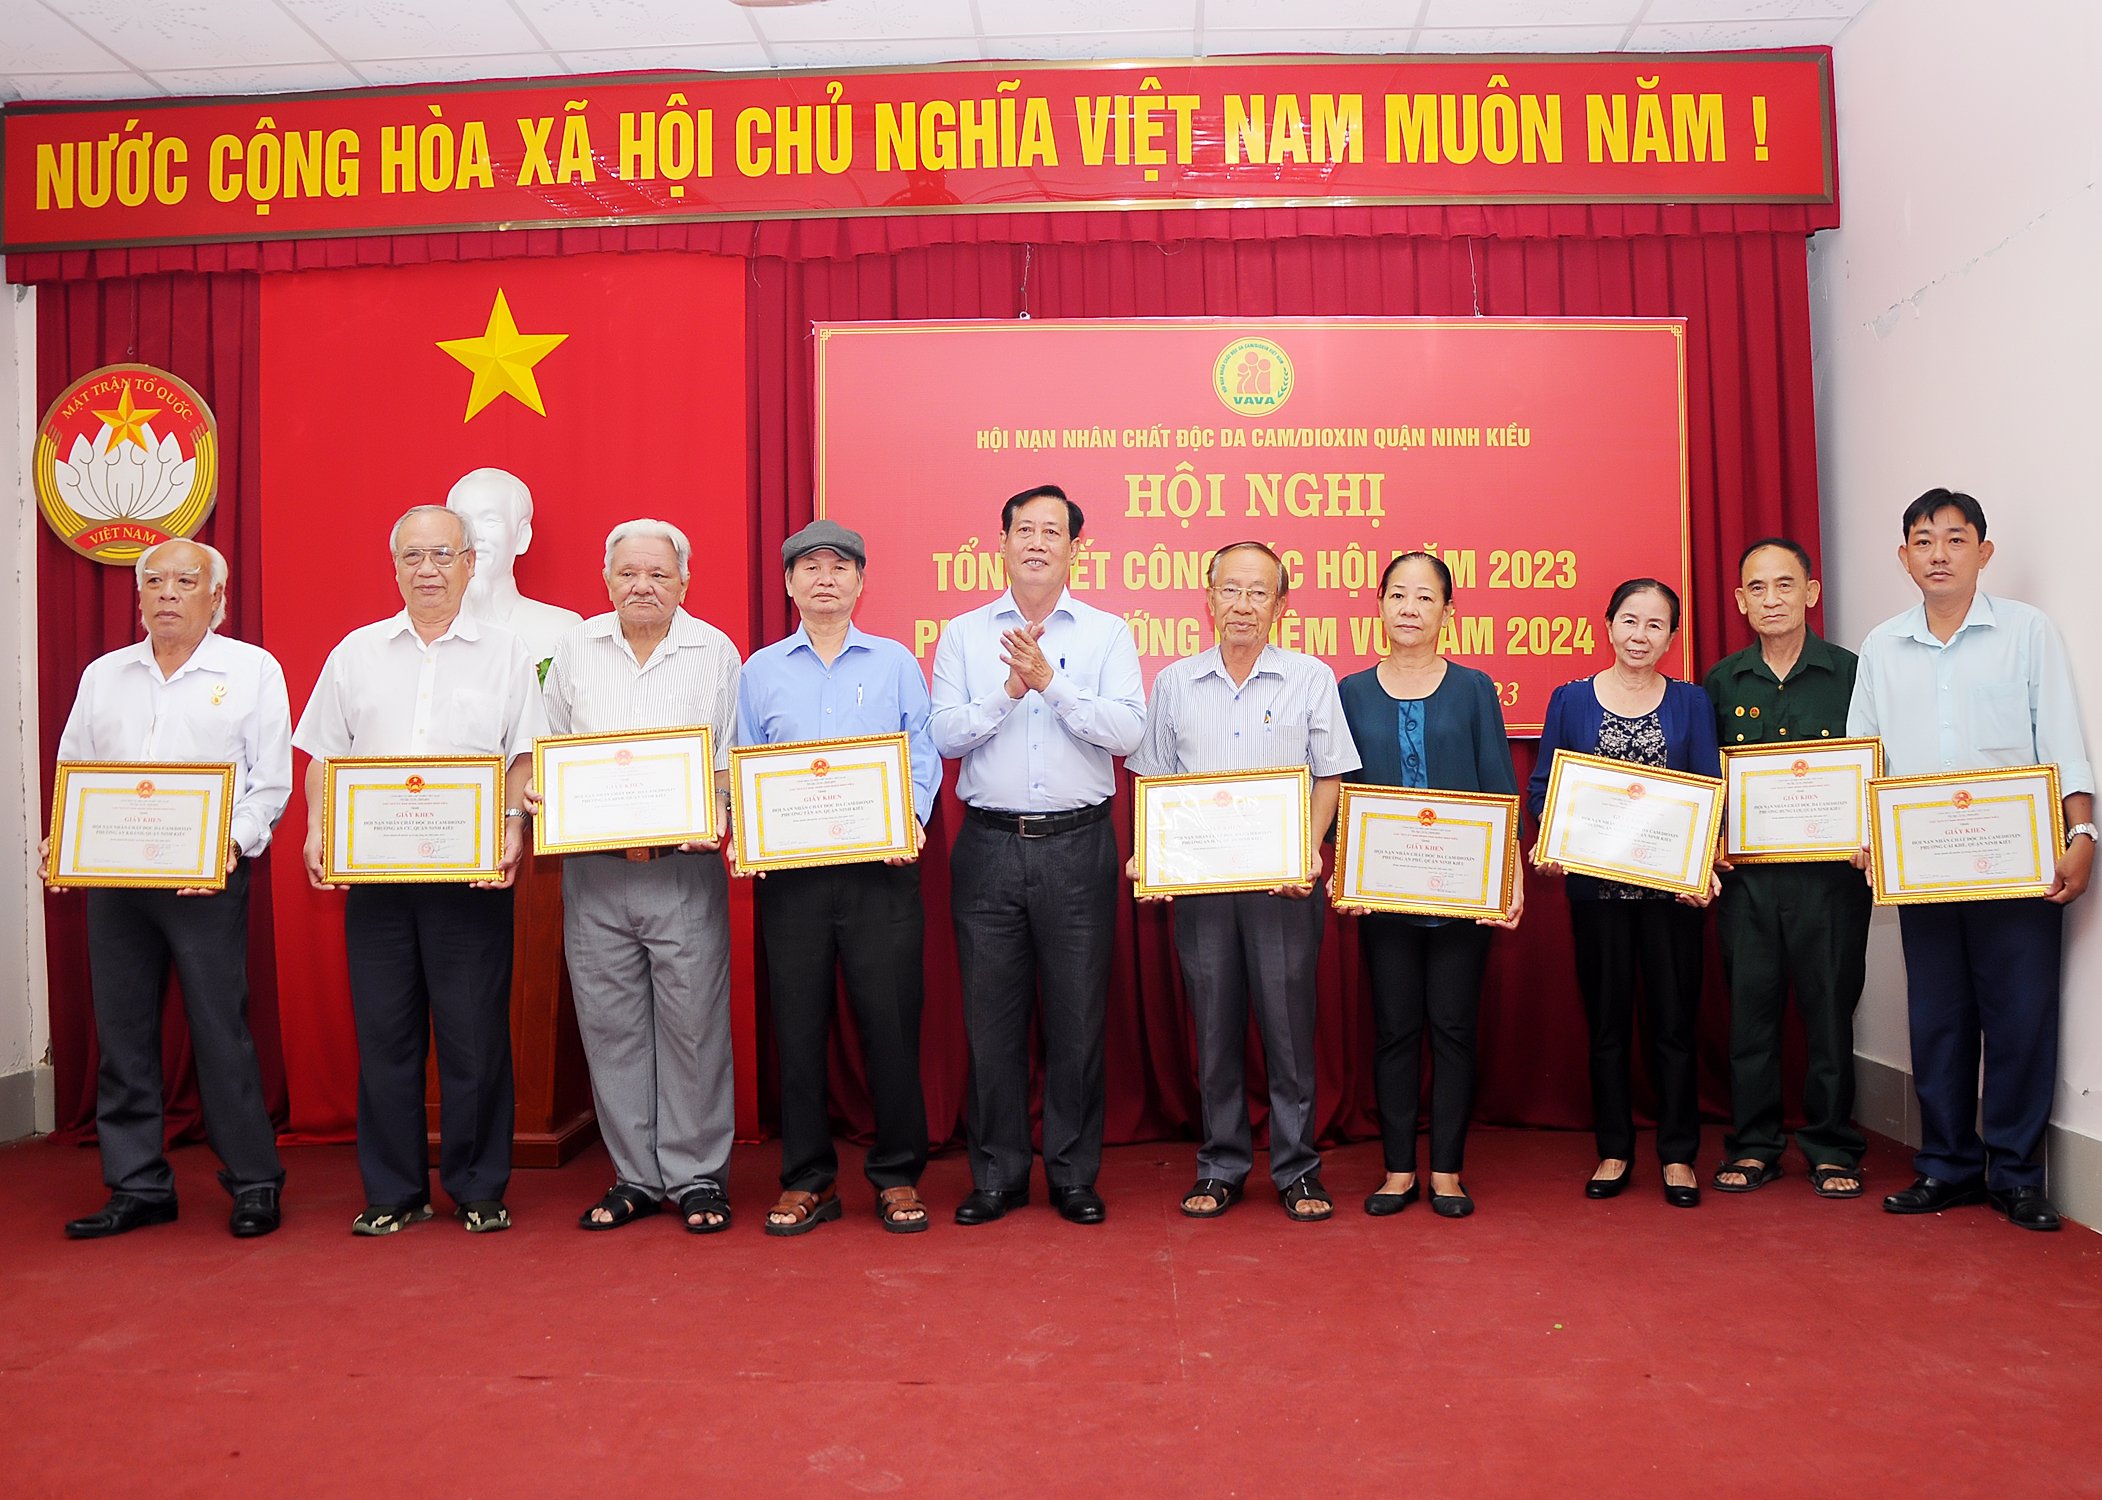 Đại diện lãnh đạo quận Ninh Kiều trao giấy khen cho các tập thể và cá nhân hoàn thành xuất sắc nhiệm vụ năm 2023